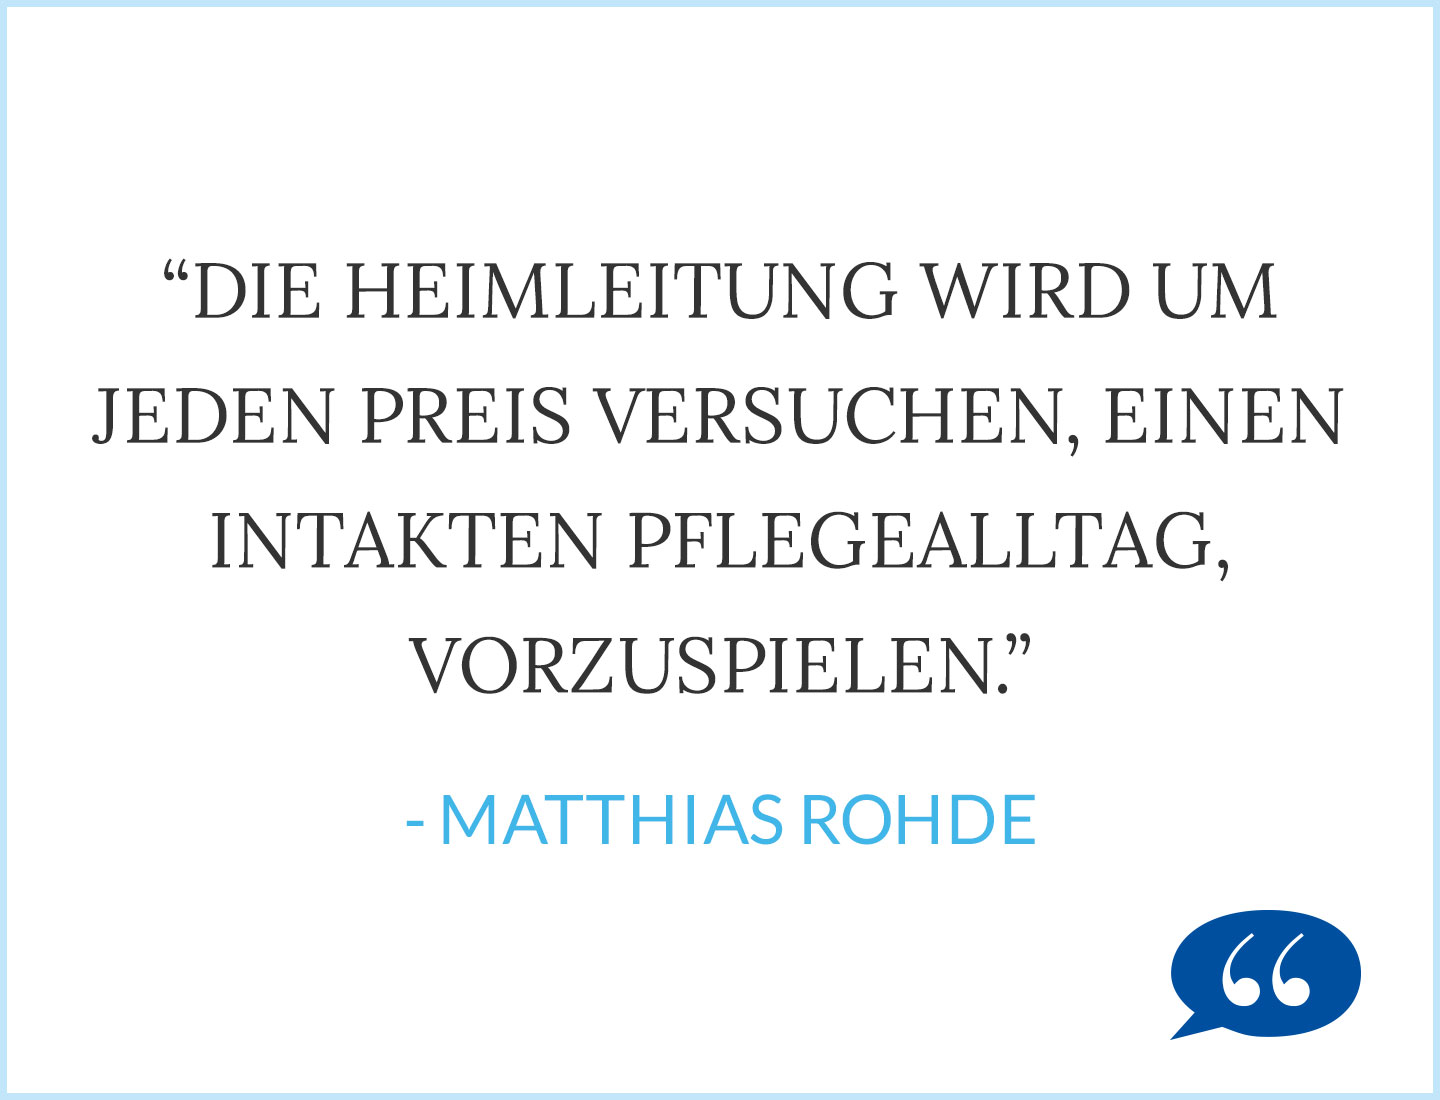 Zitat Pflegenotstand Matthias Rohde